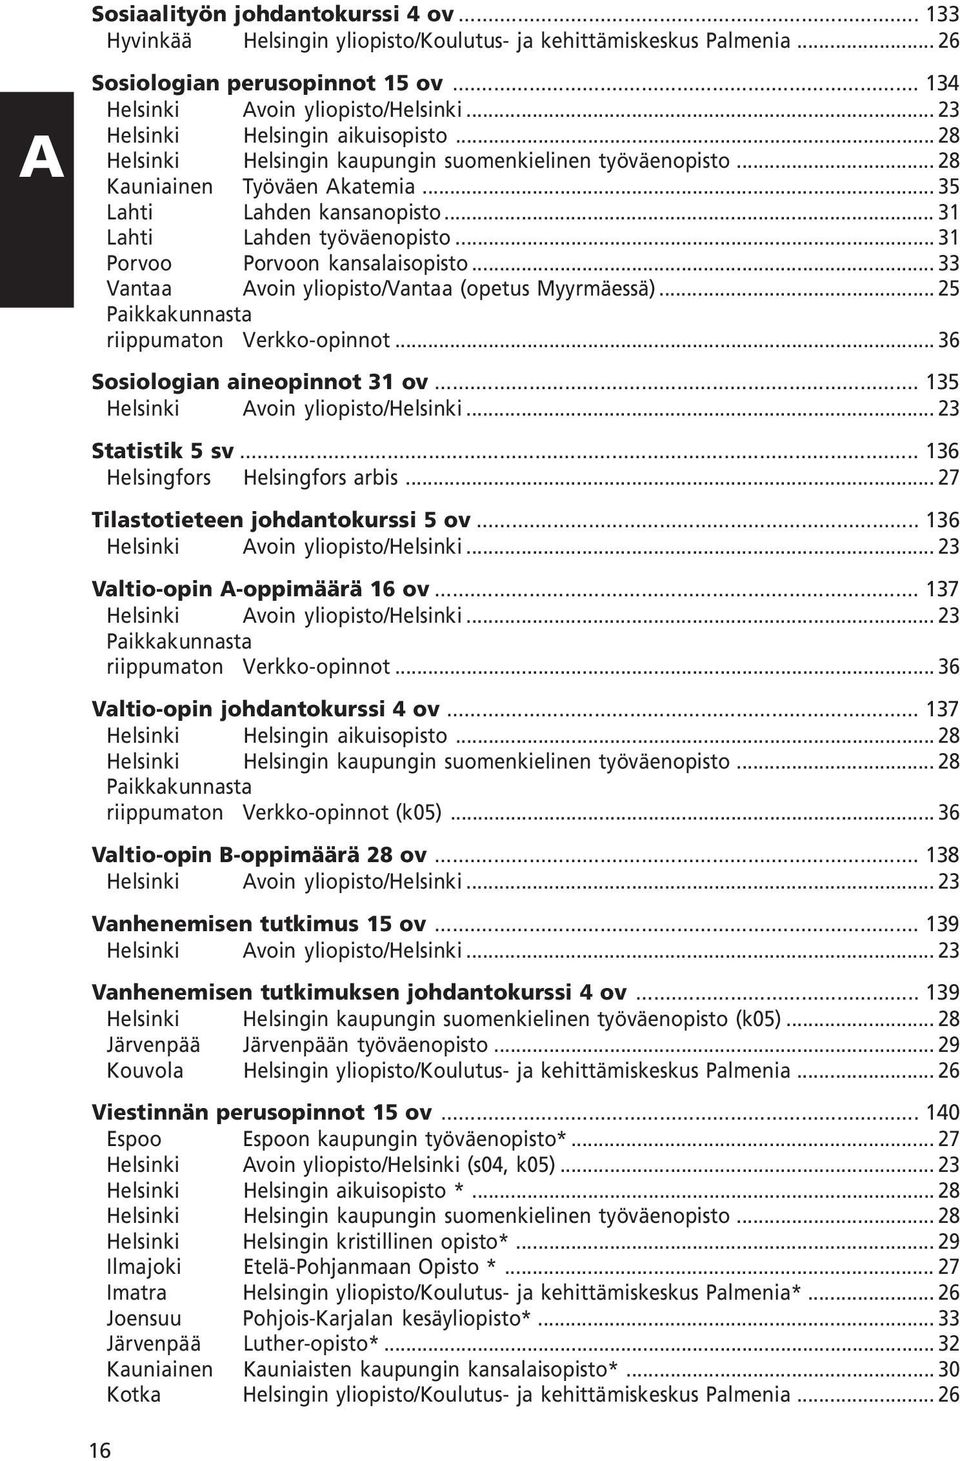 .. 31 Porvoo Porvoon kansalaisopisto... 33 Vantaa Avoin yliopisto/vantaa (opetus Myyrmäessä)... 25 Paikkakunnasta riippumaton Verkko-opinnot... 36 Sosiologian aineopinnot 31 ov.